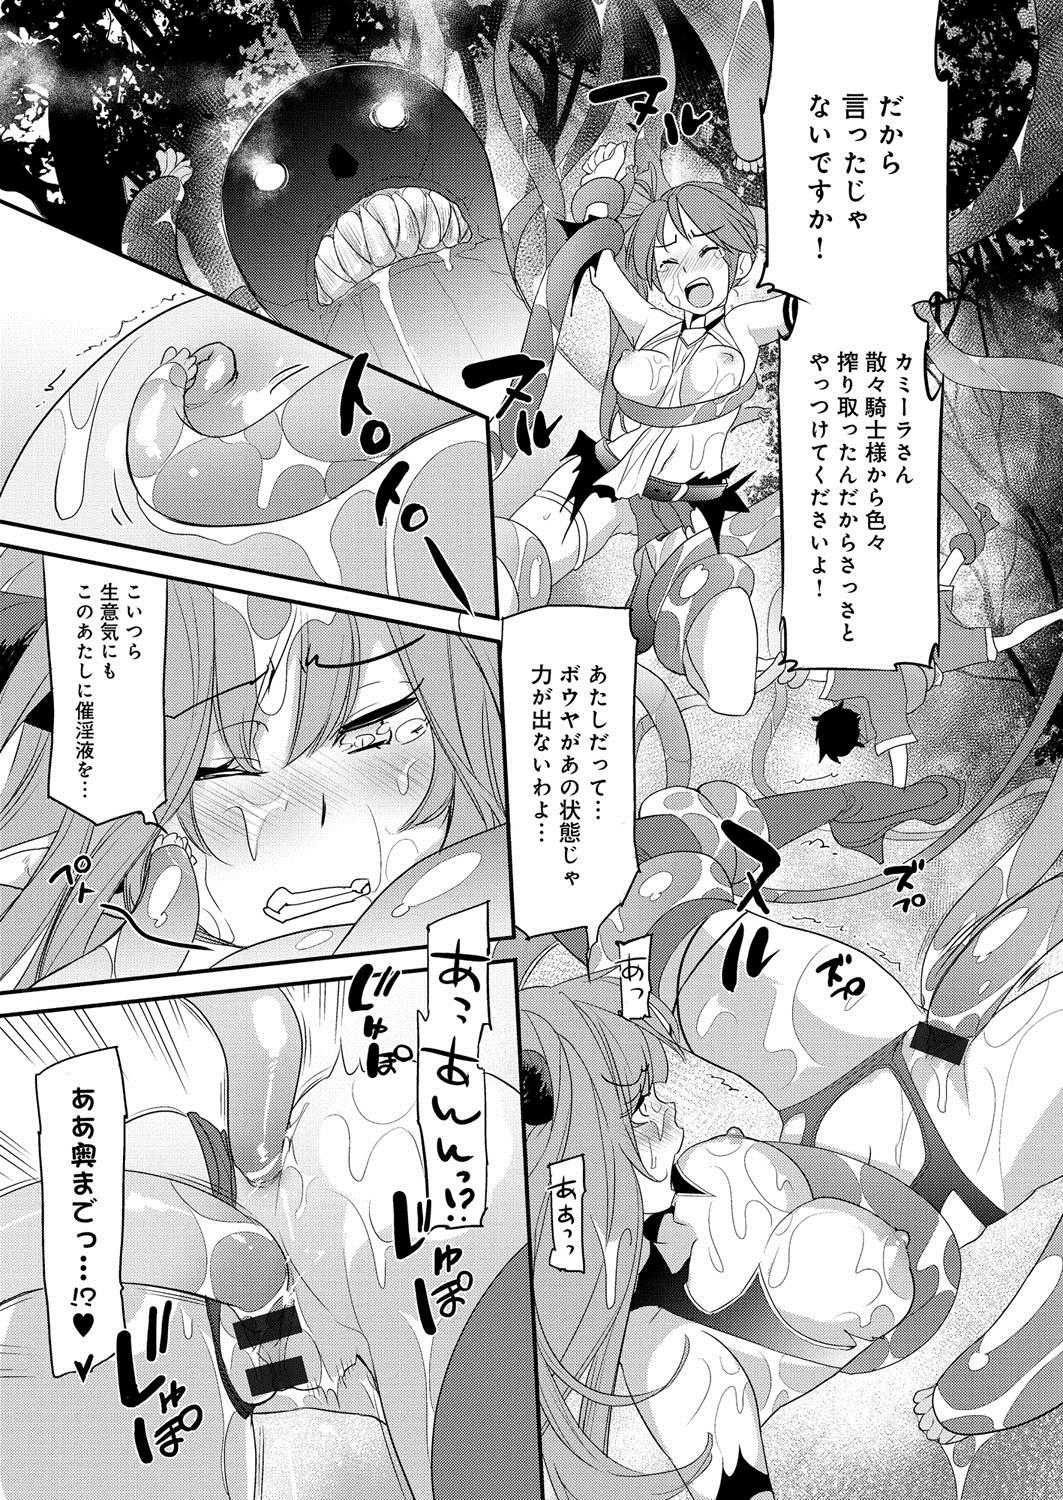 [Anthology] Lord of Valkyrie Adult - Comic Anthology R18 Handakara Saigomade... Mou, Kishi-sama no Ecchi♪ 50